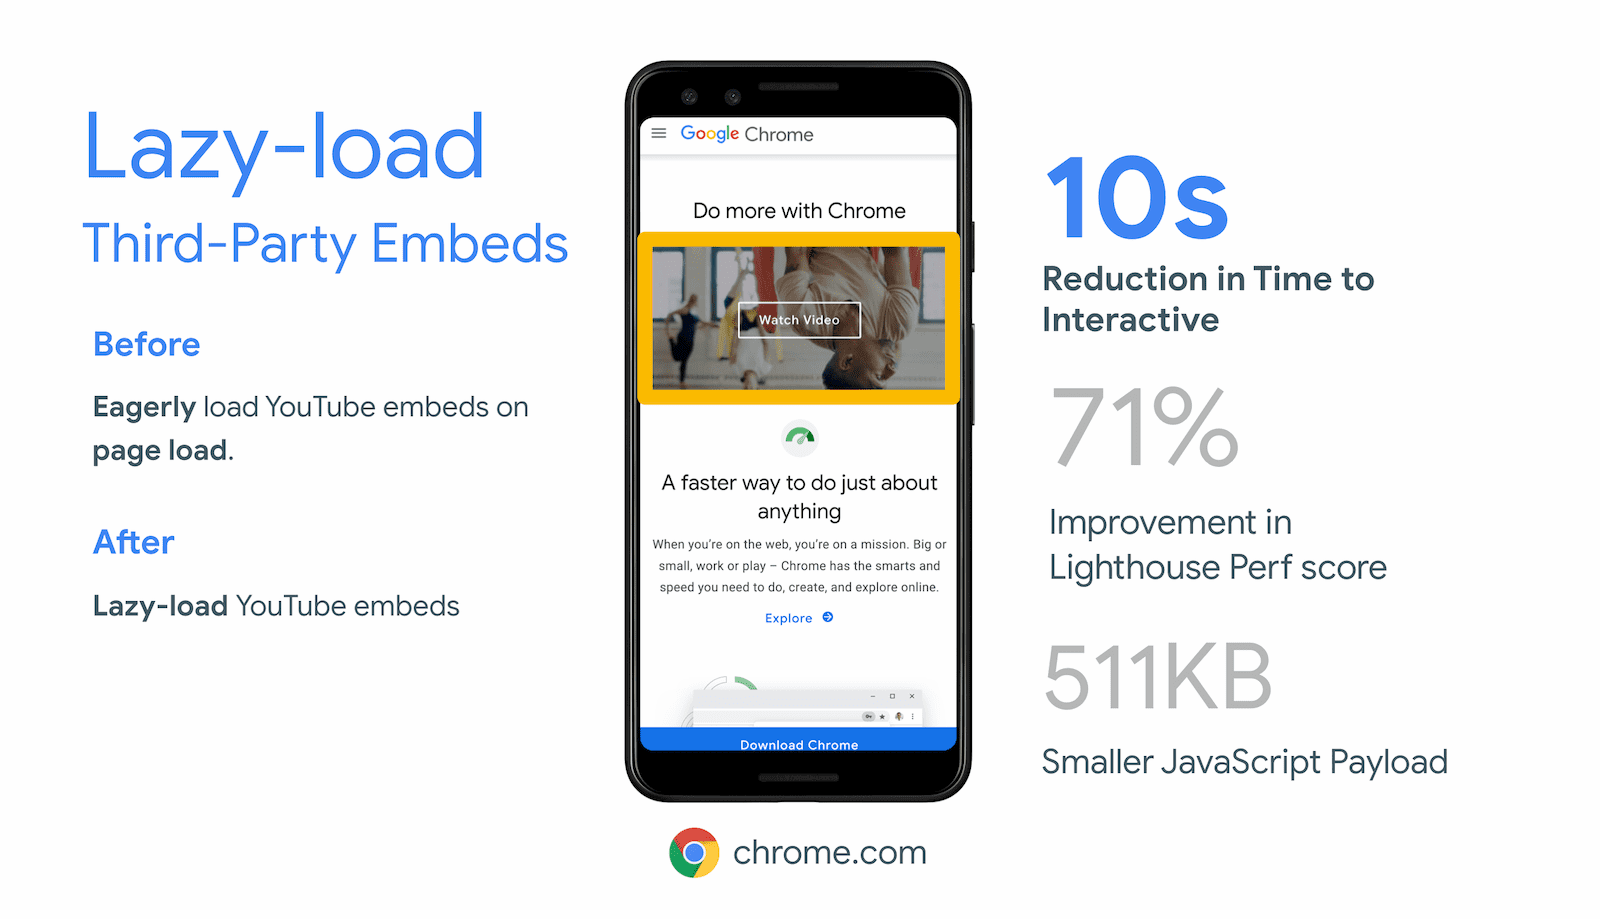 Chrome.com giảm được 10 giây về Thời gian tương tác nhờ các iframe ngoài màn hình tải từng phần cho video được nhúng trên YouTube